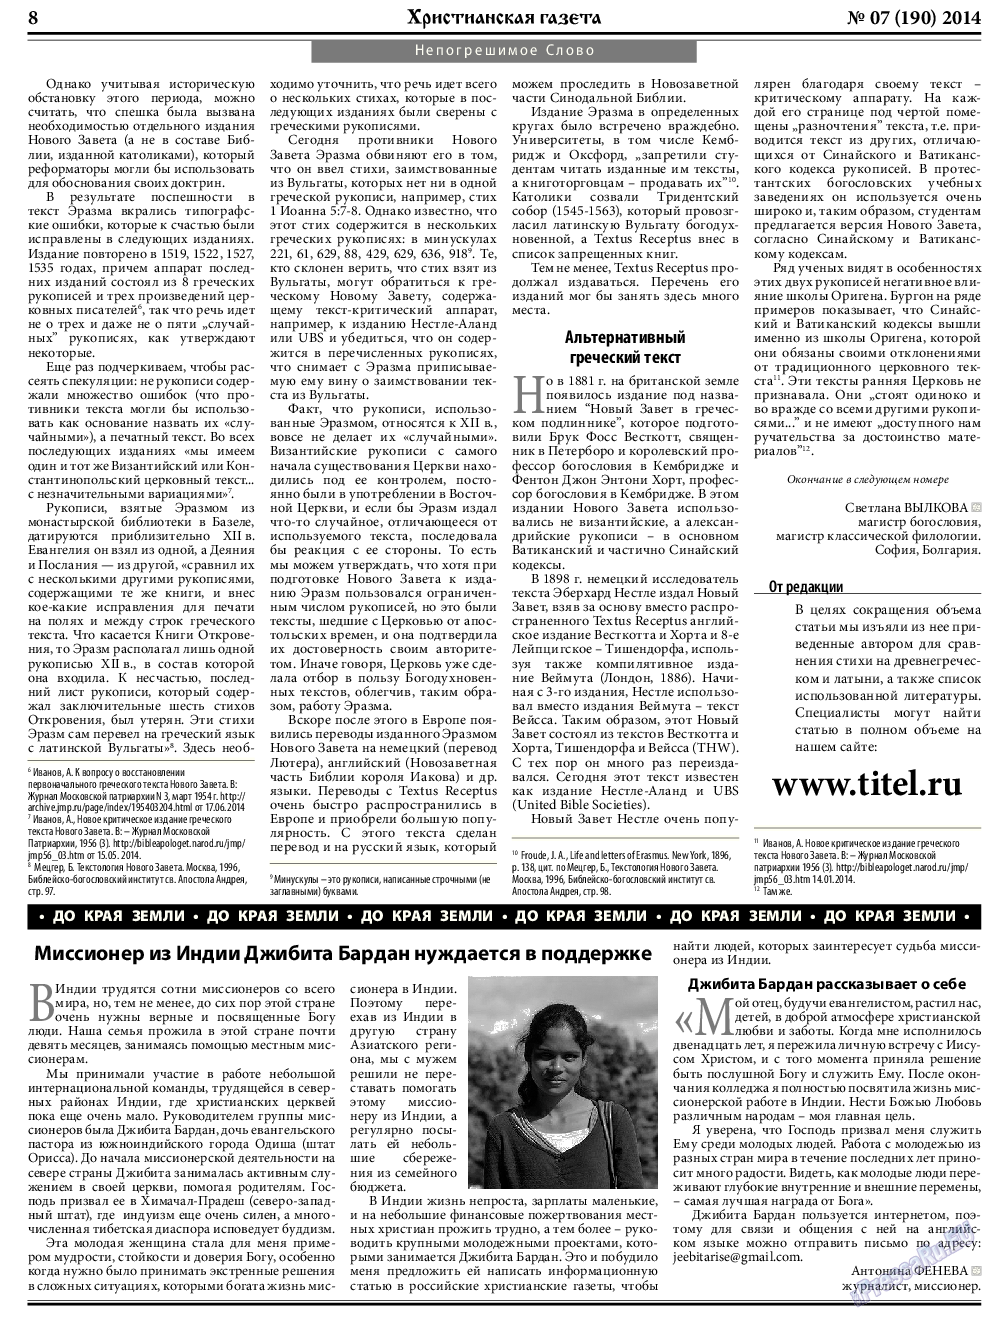 Христианская газета, газета. 2014 №7 стр.8